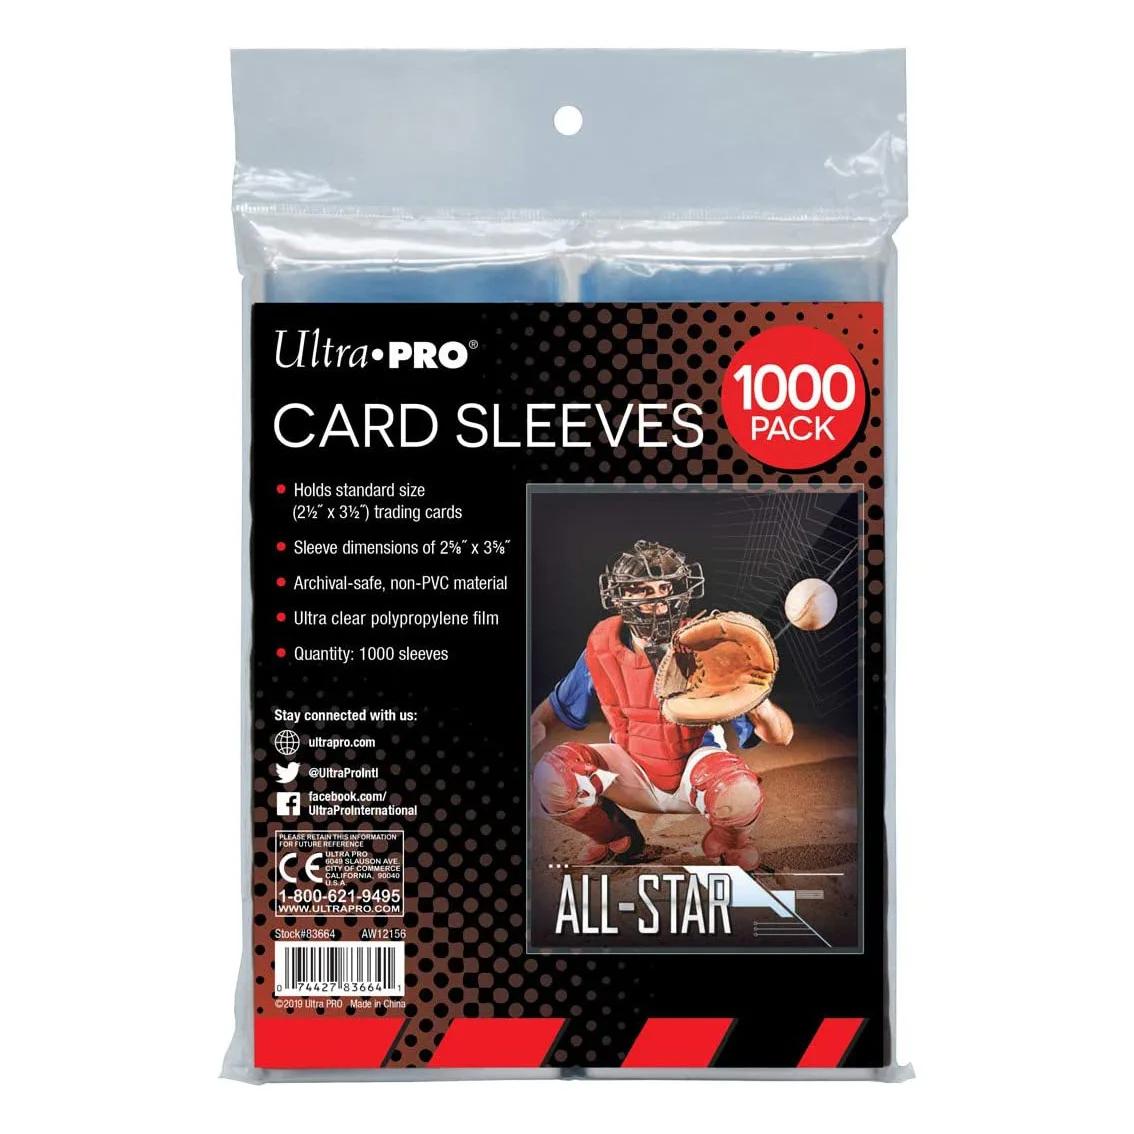 2.5 x 3.5 (1000 카운트 팩) 의 표준 크기 트레이딩 카드용 울트라 프로 클리어 카드 슬리브